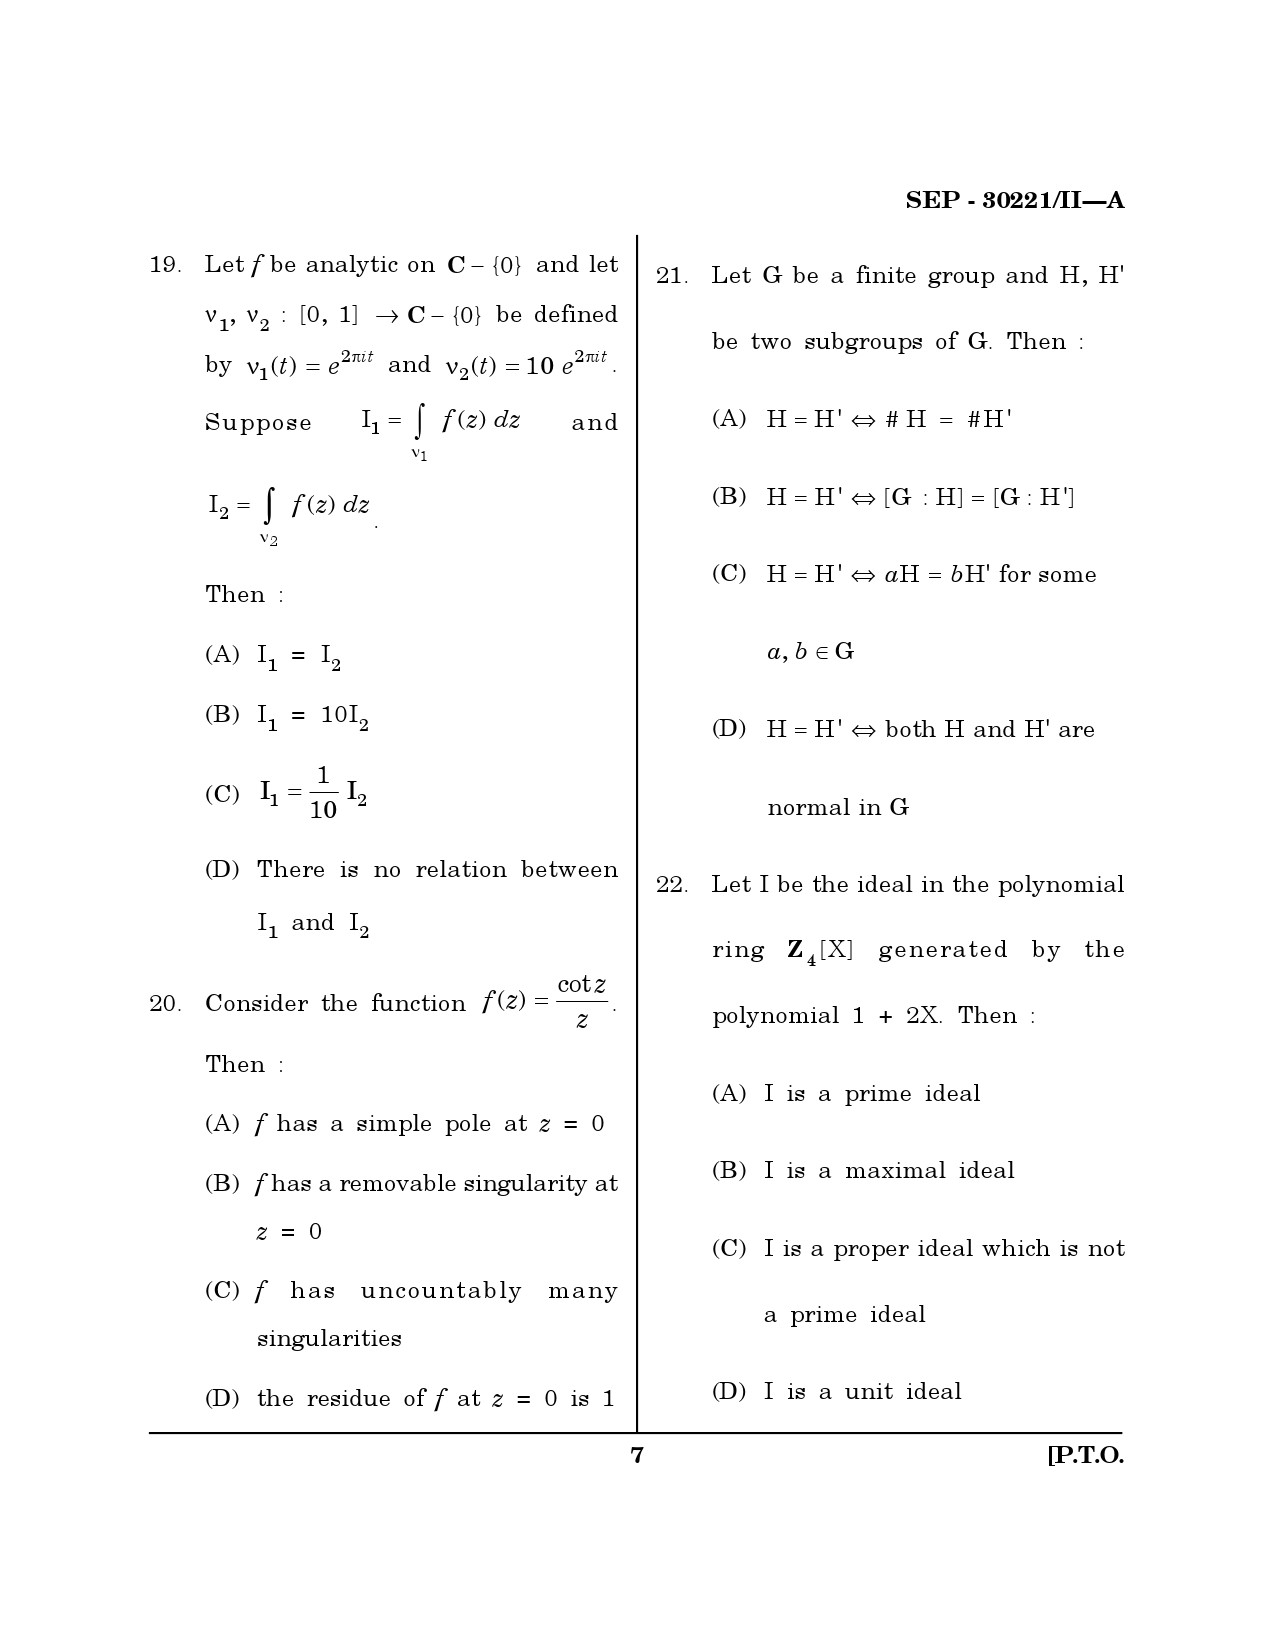 Maharashtra SET Mathematical Sciences Exam Question Paper September 2021 6